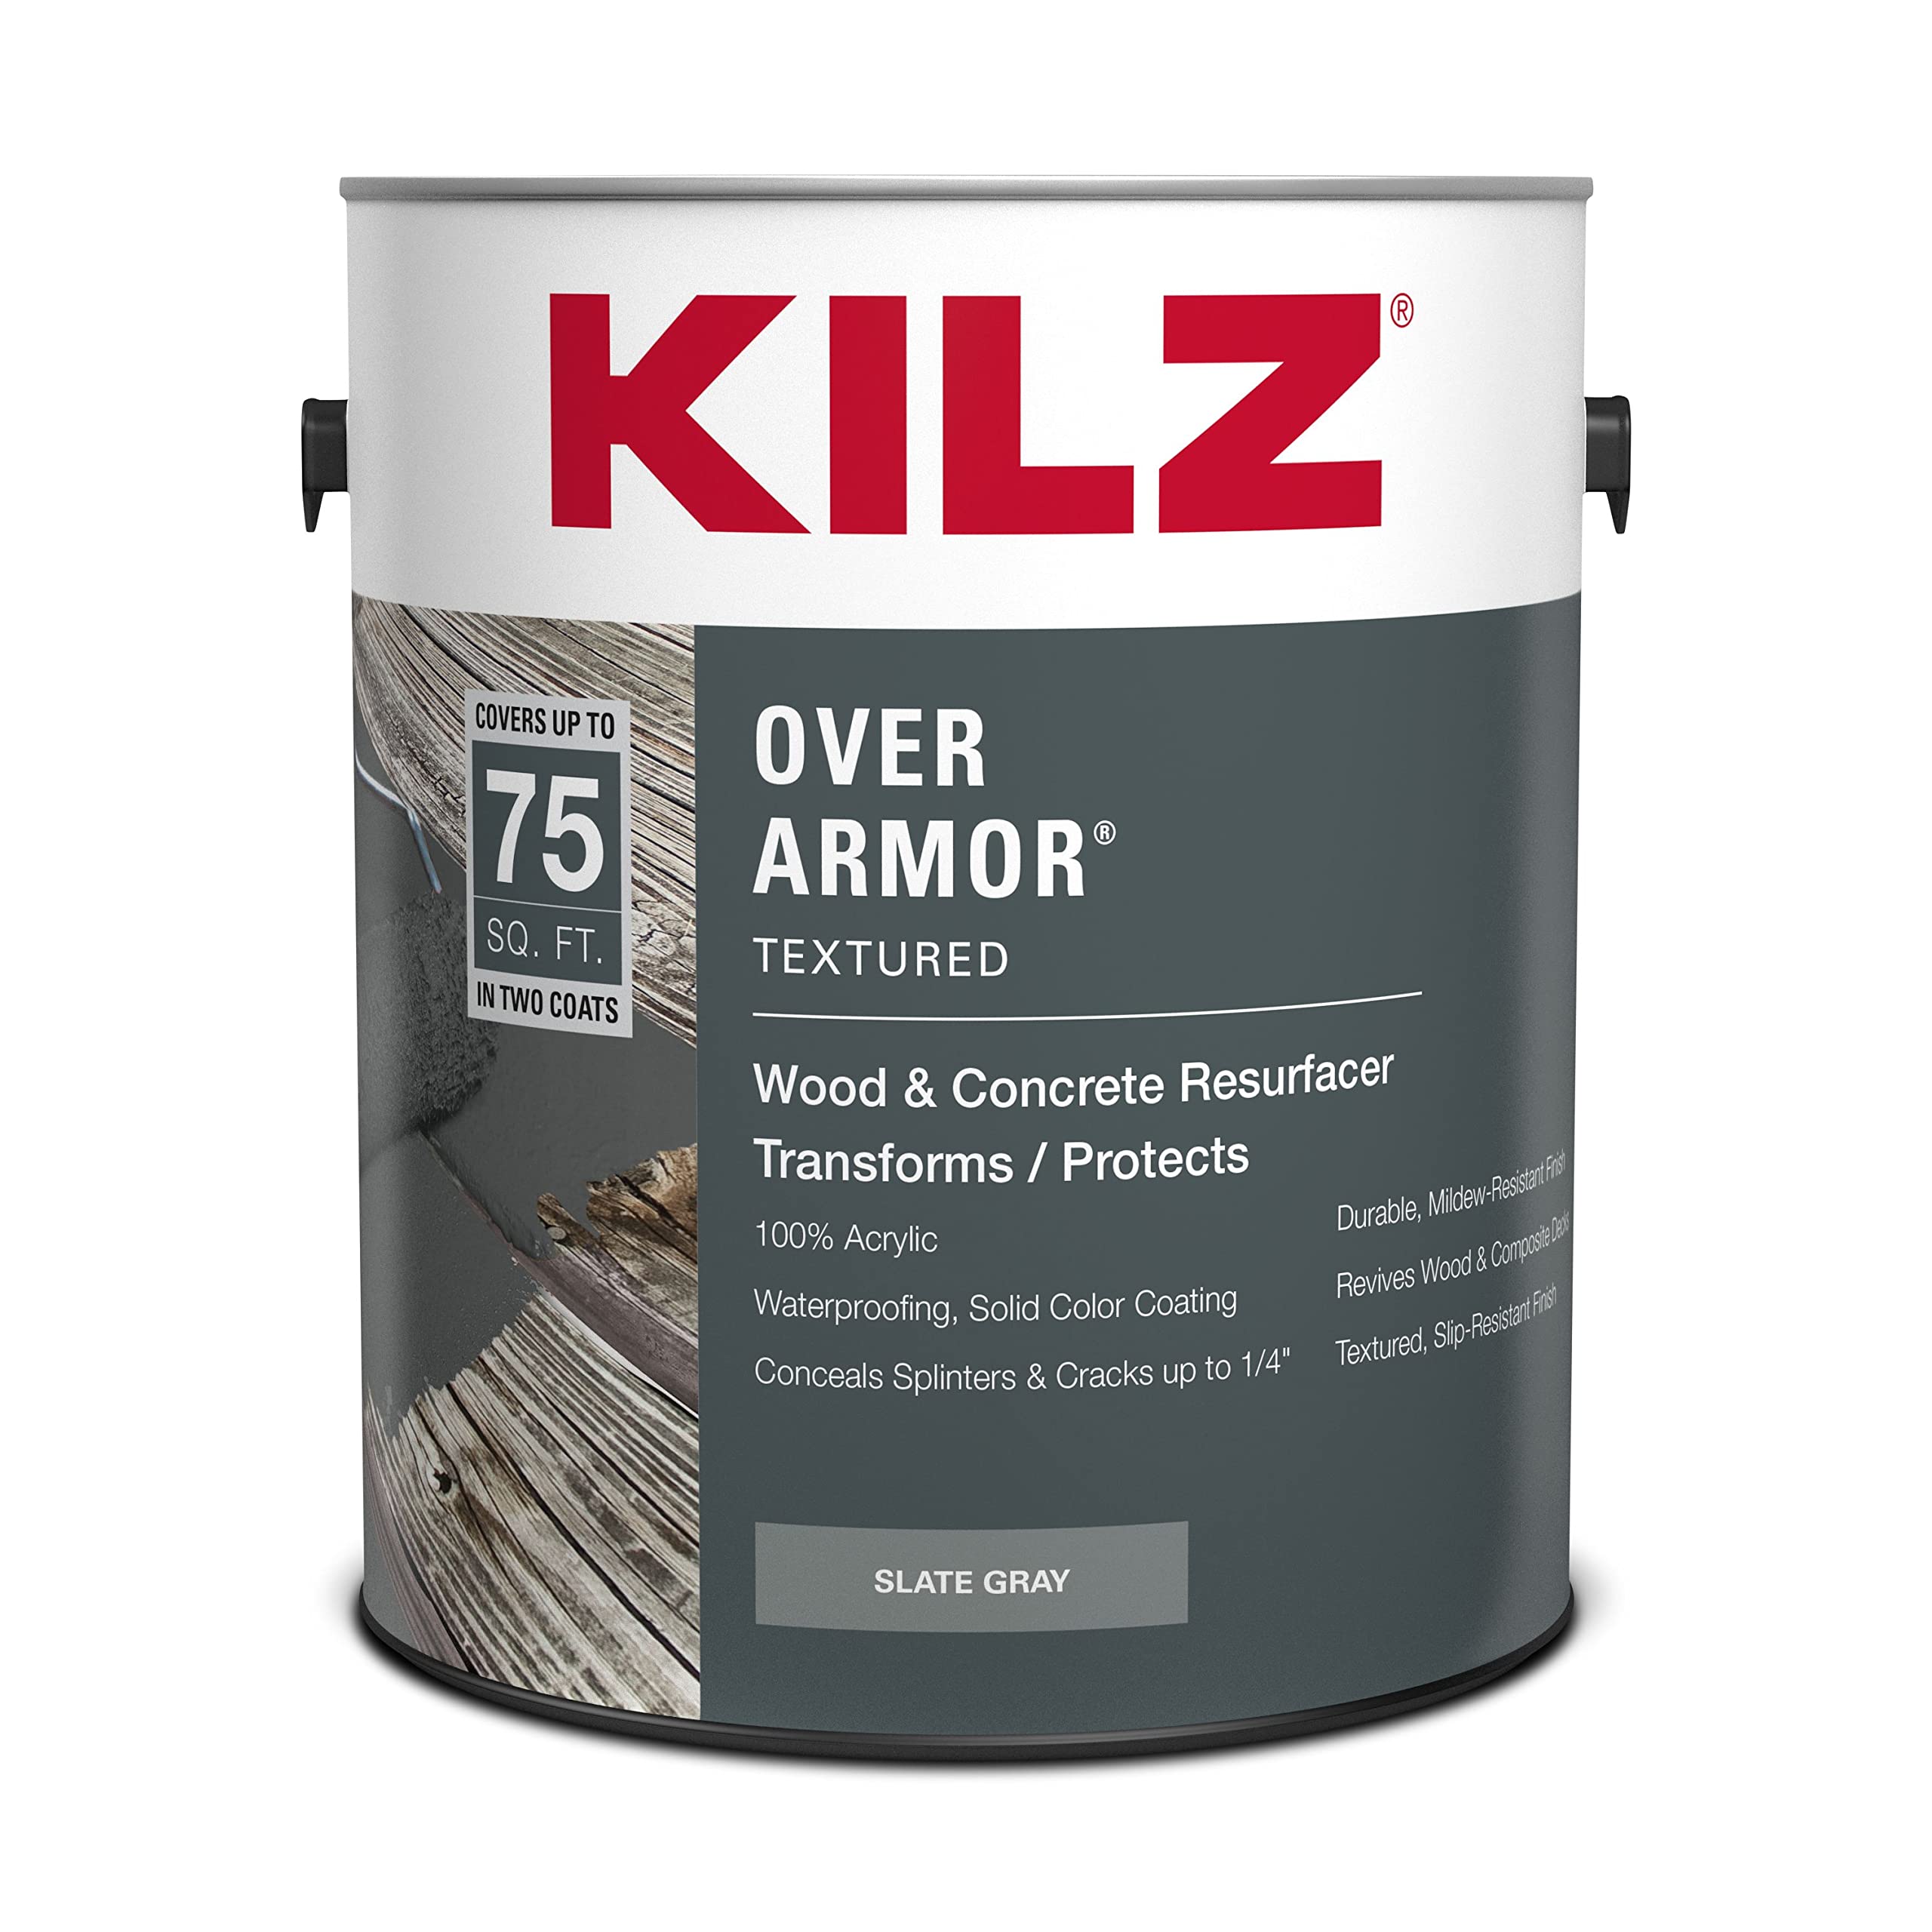 Kilz Over Armor paint for old decks and resurfacing